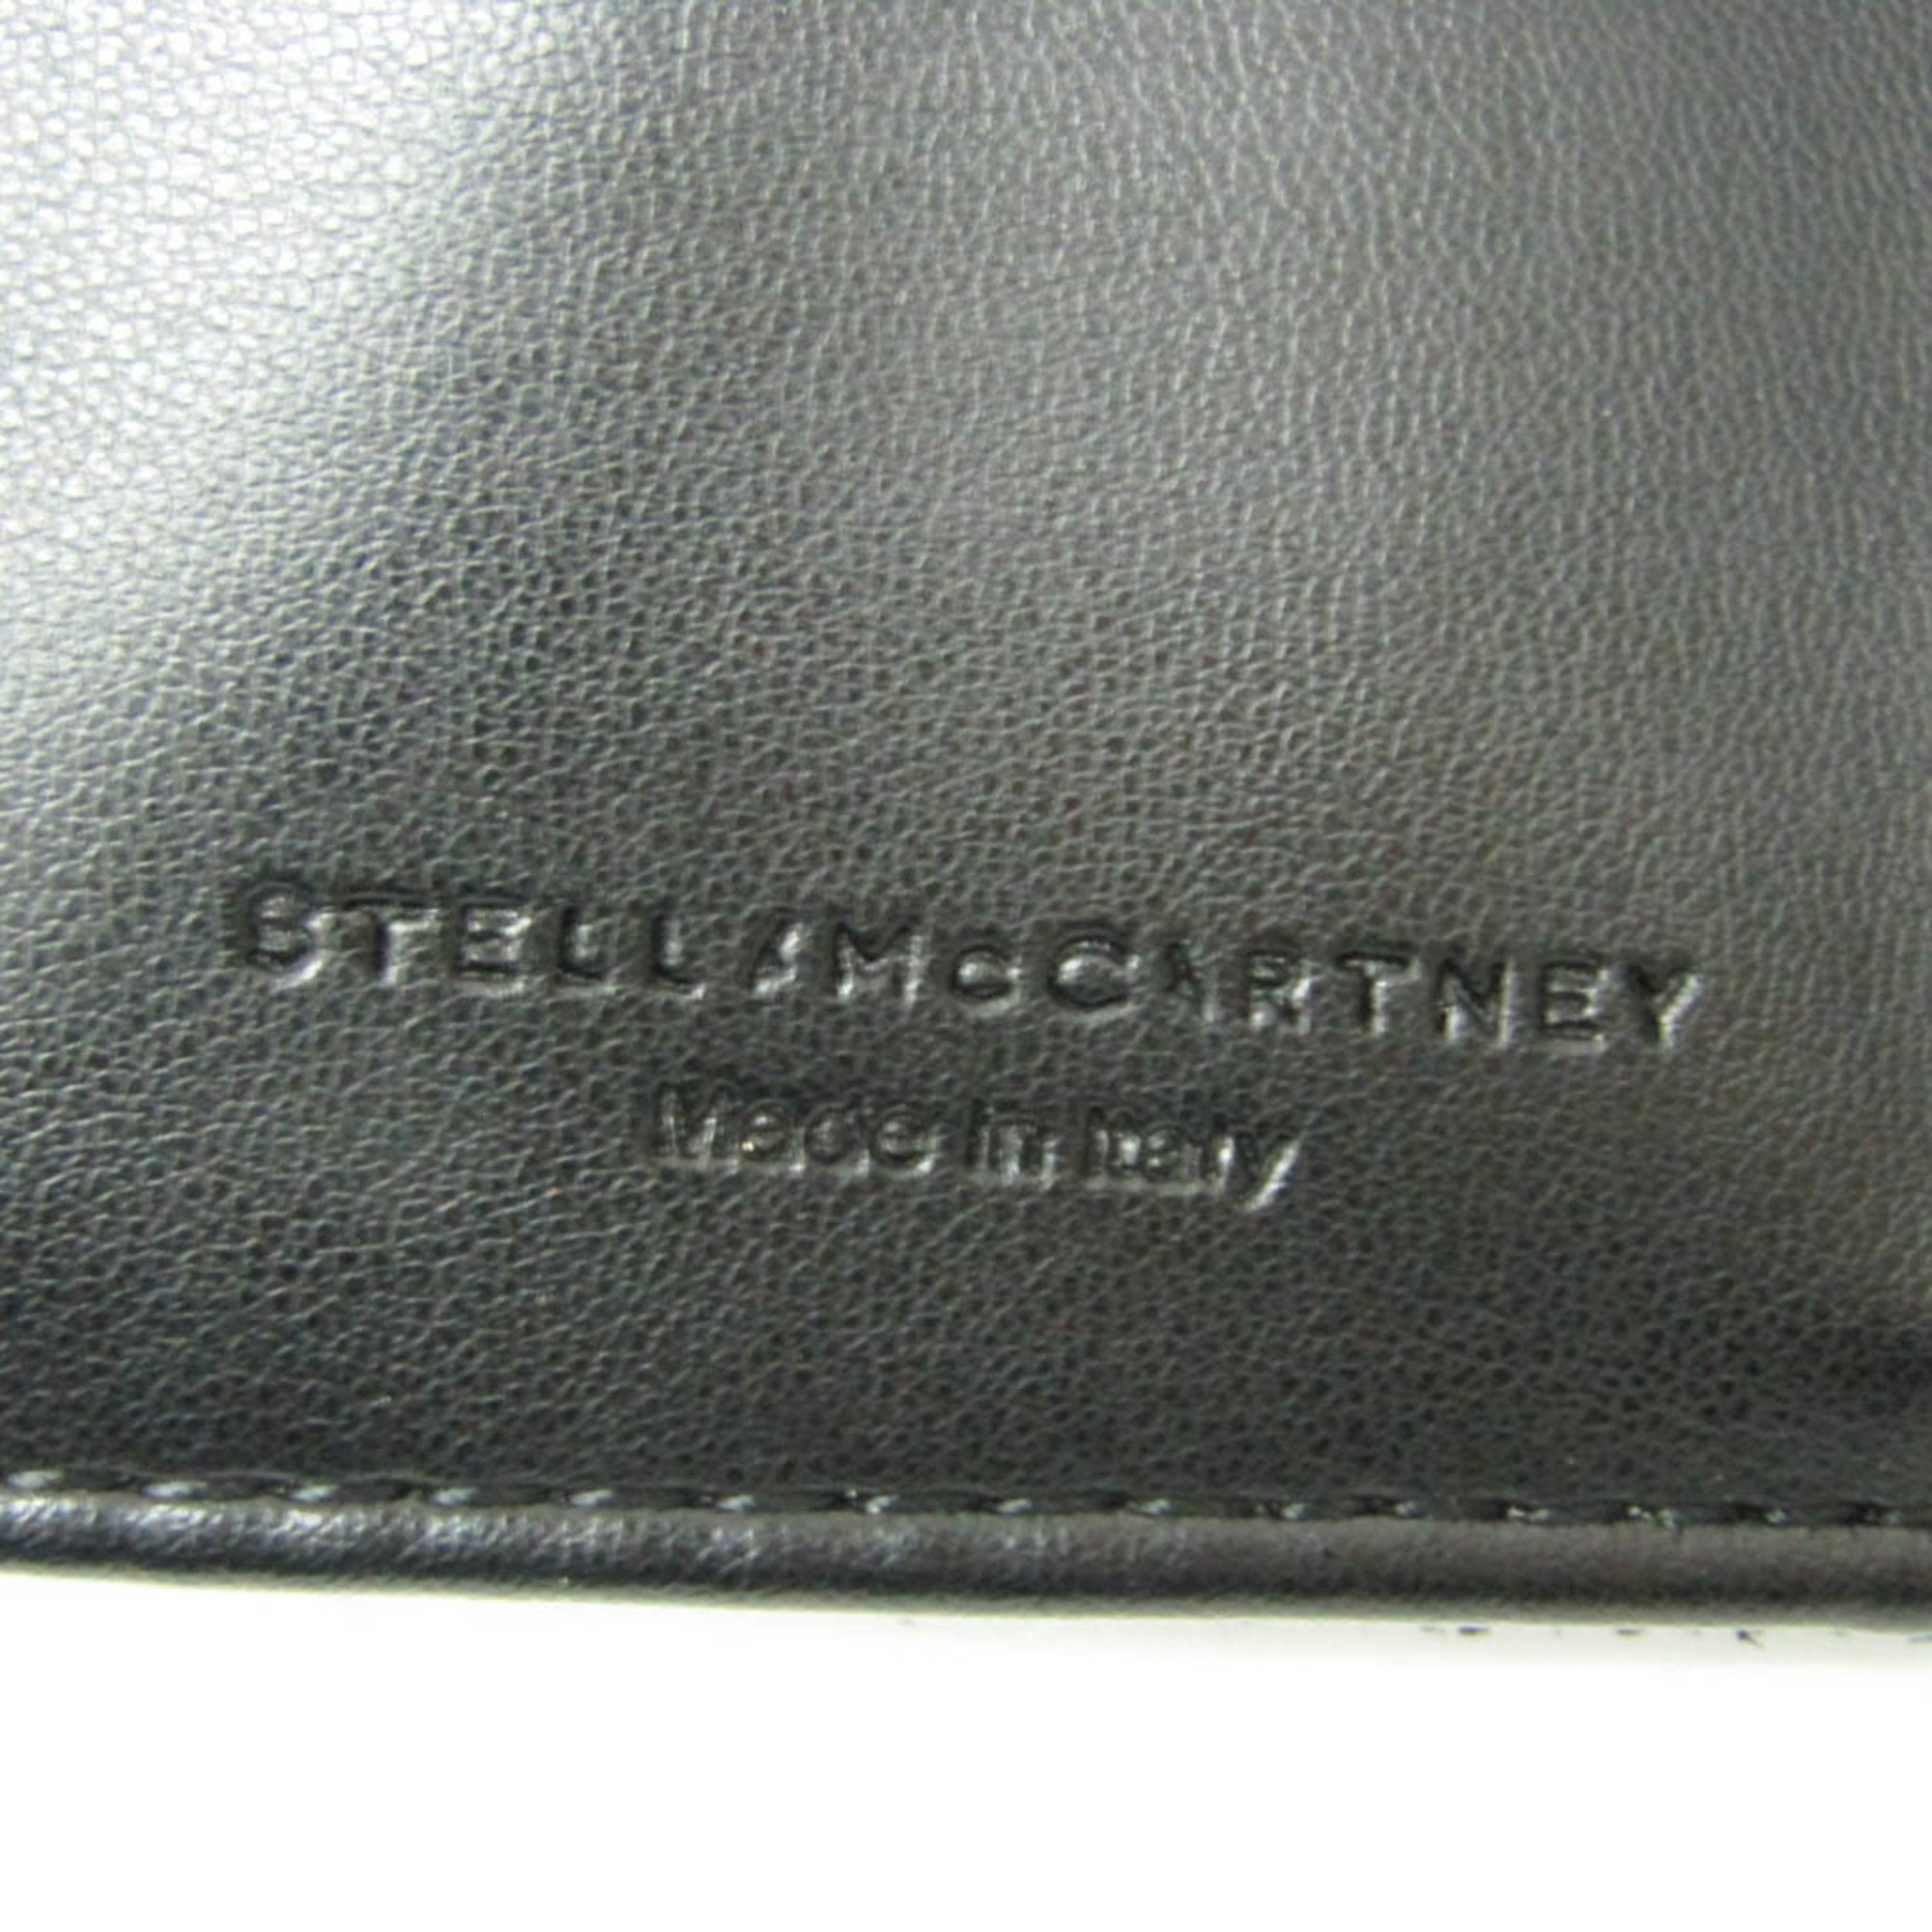 Stella McCartney FALABELLA 521371W9132 Women's Polyester Wallet (tri-fold) Black